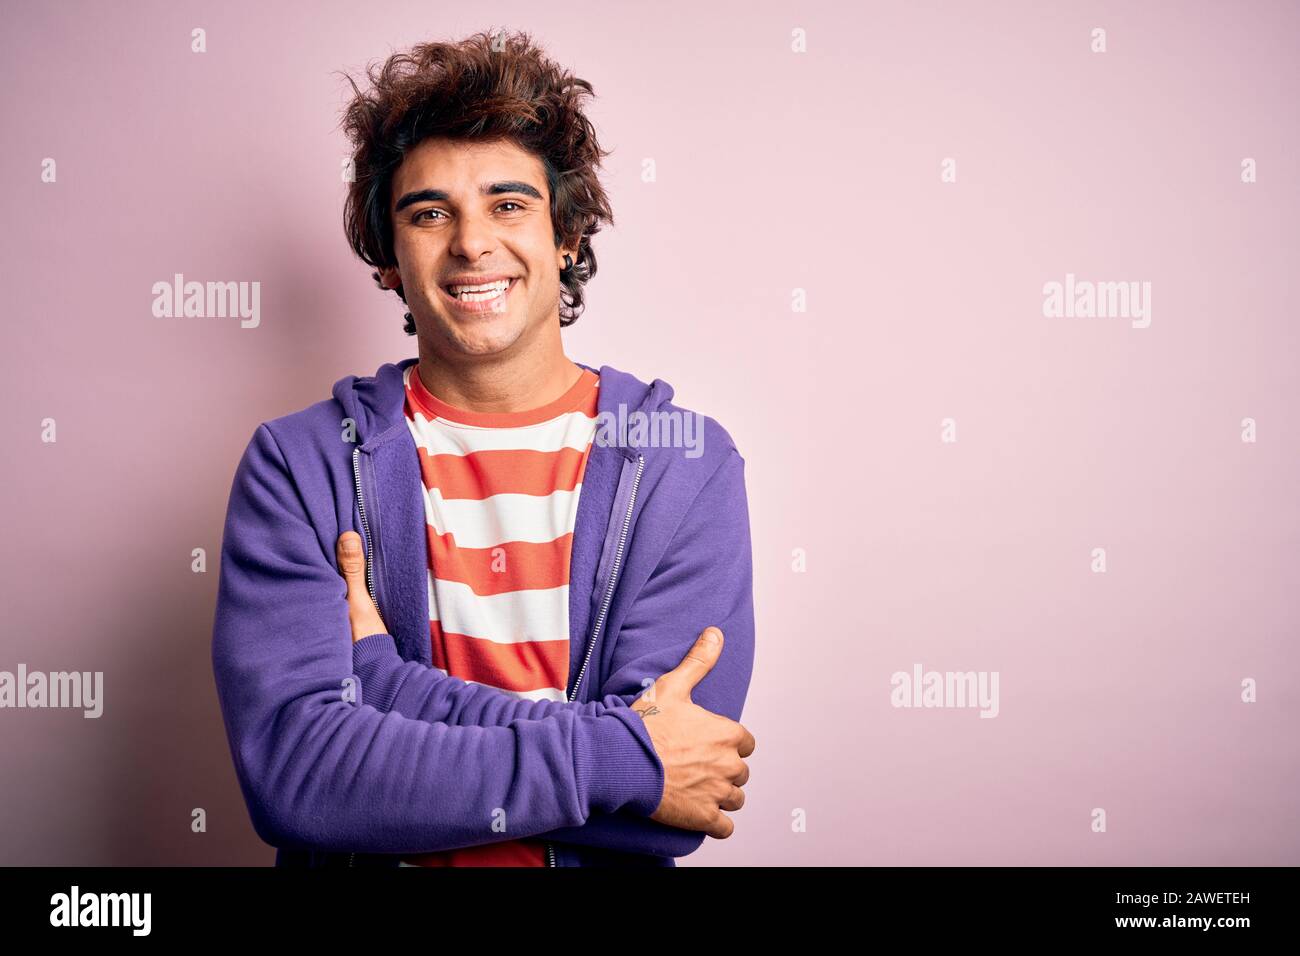 Jeune homme portant un t-shirt rayé et un sueur violet sur un arrière-plan rose isolé heureux visage souriant avec des bras croisés regardant l'appareil photo. Position Banque D'Images